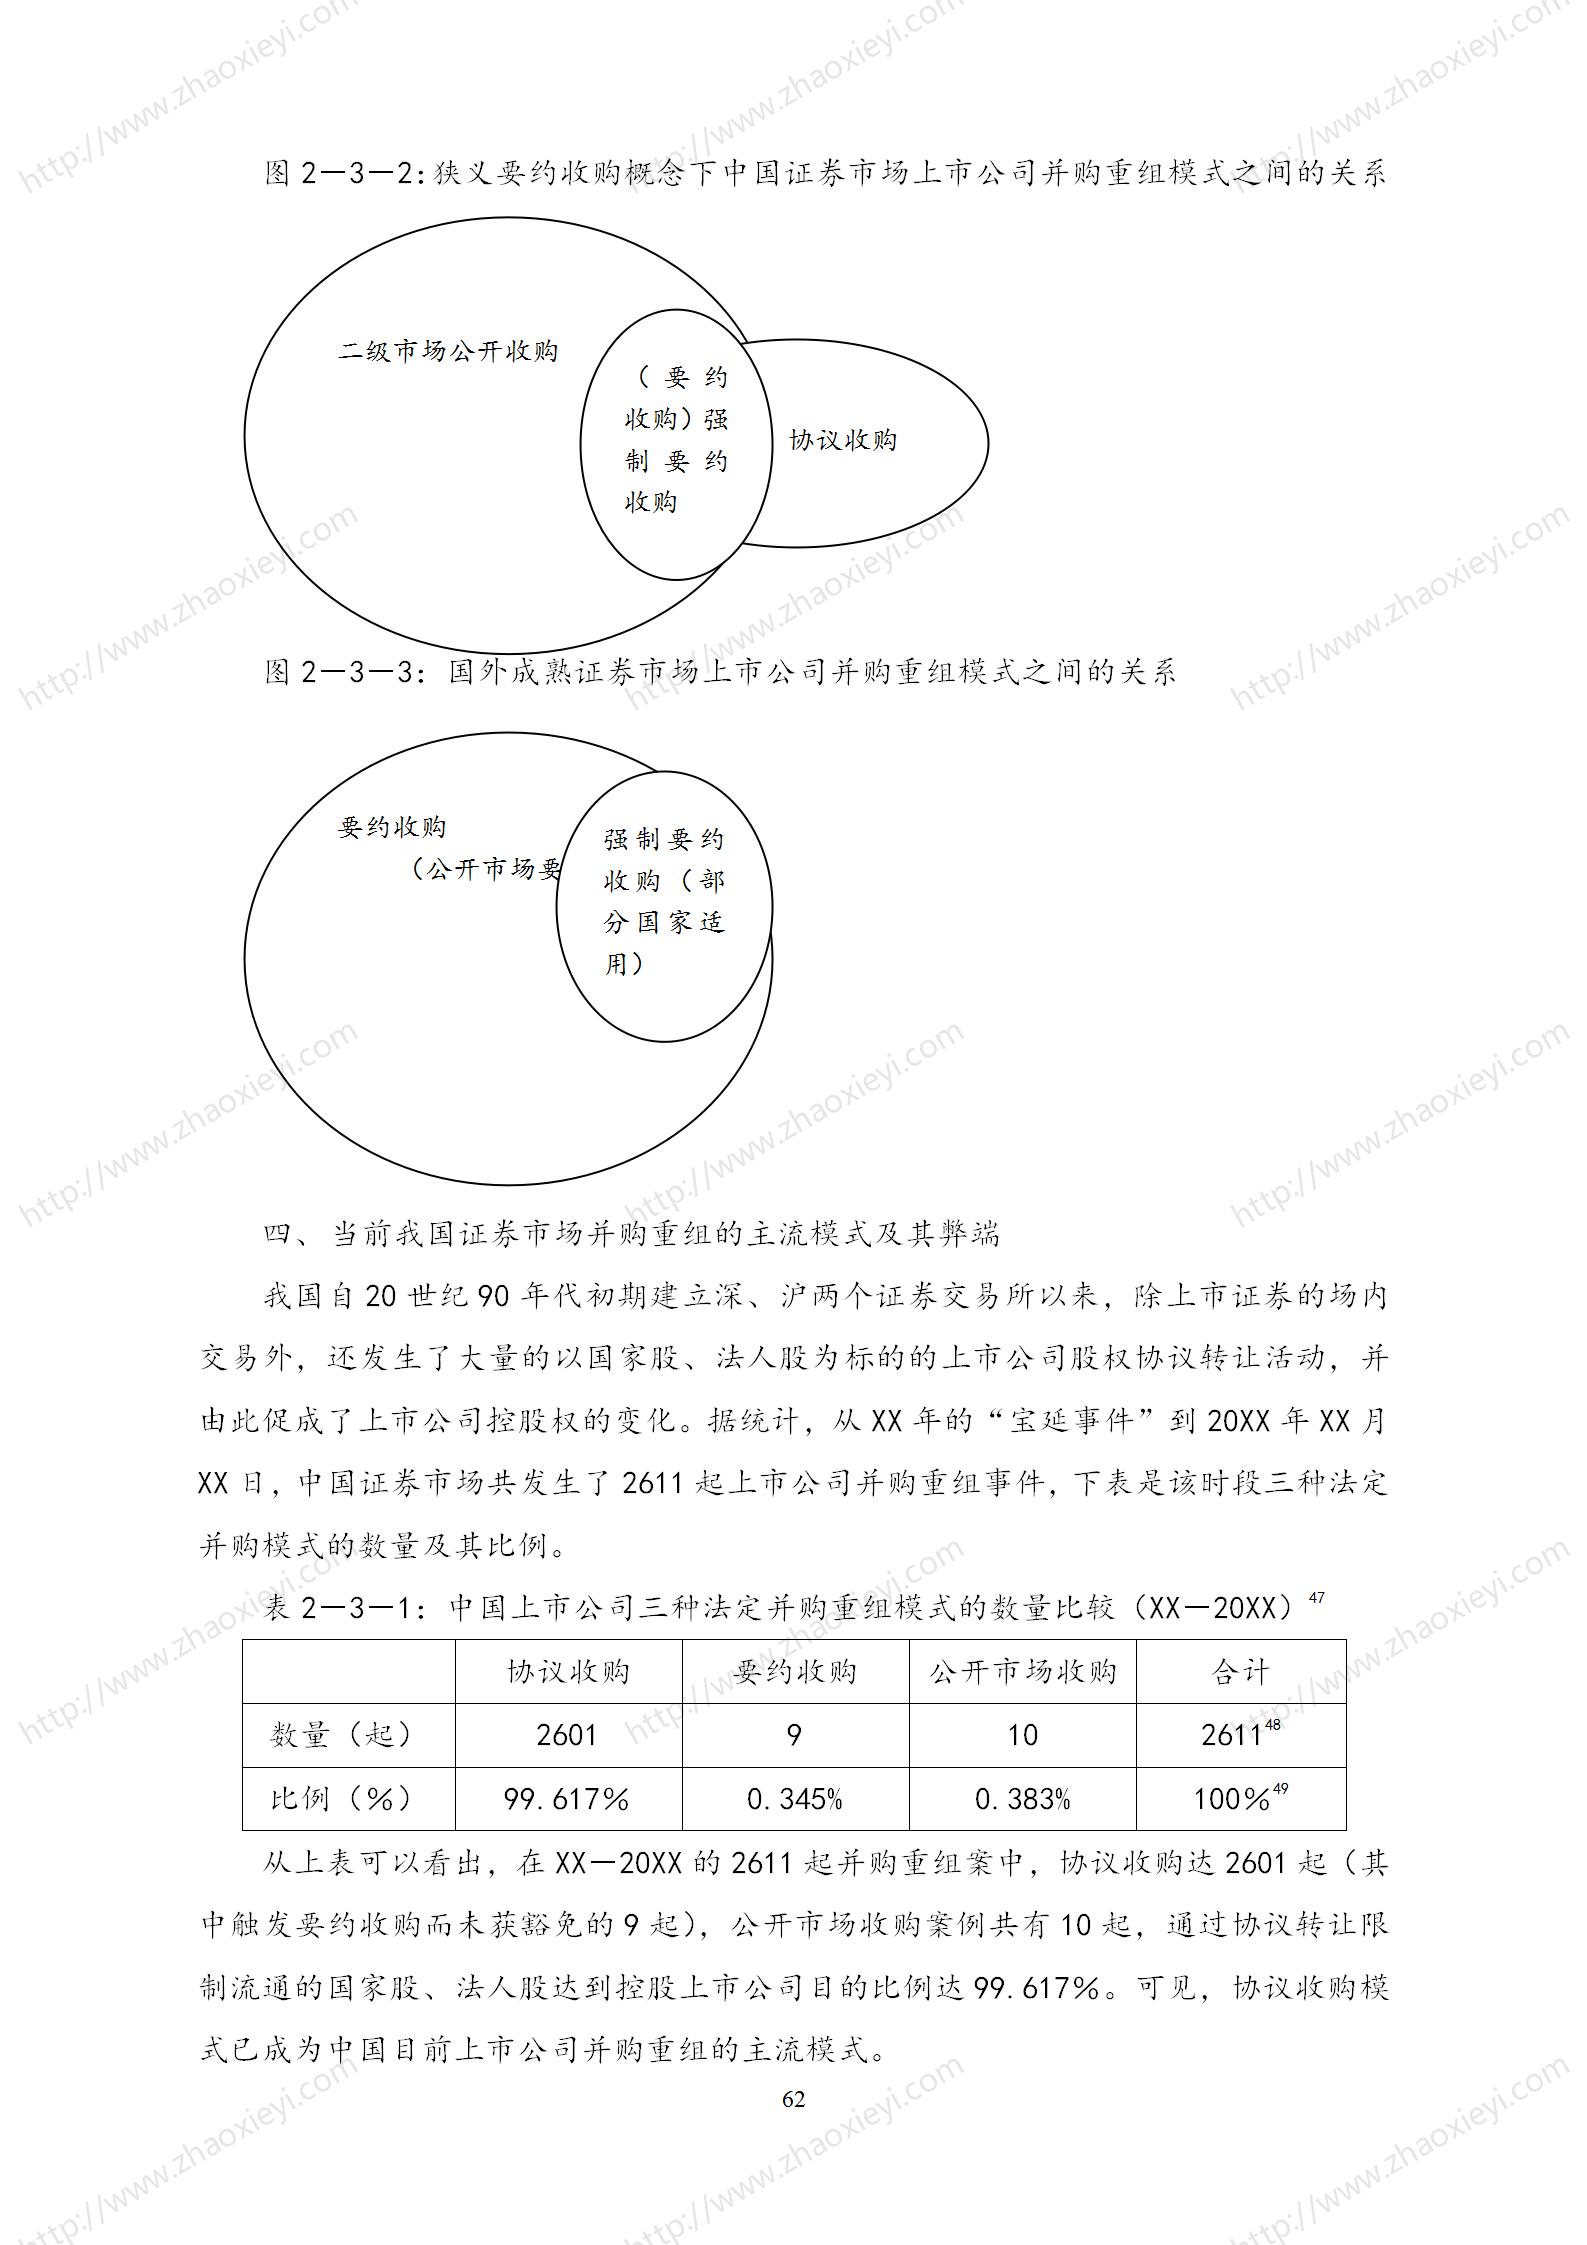 中国上市公司并购重组的模式研究_33.jpg